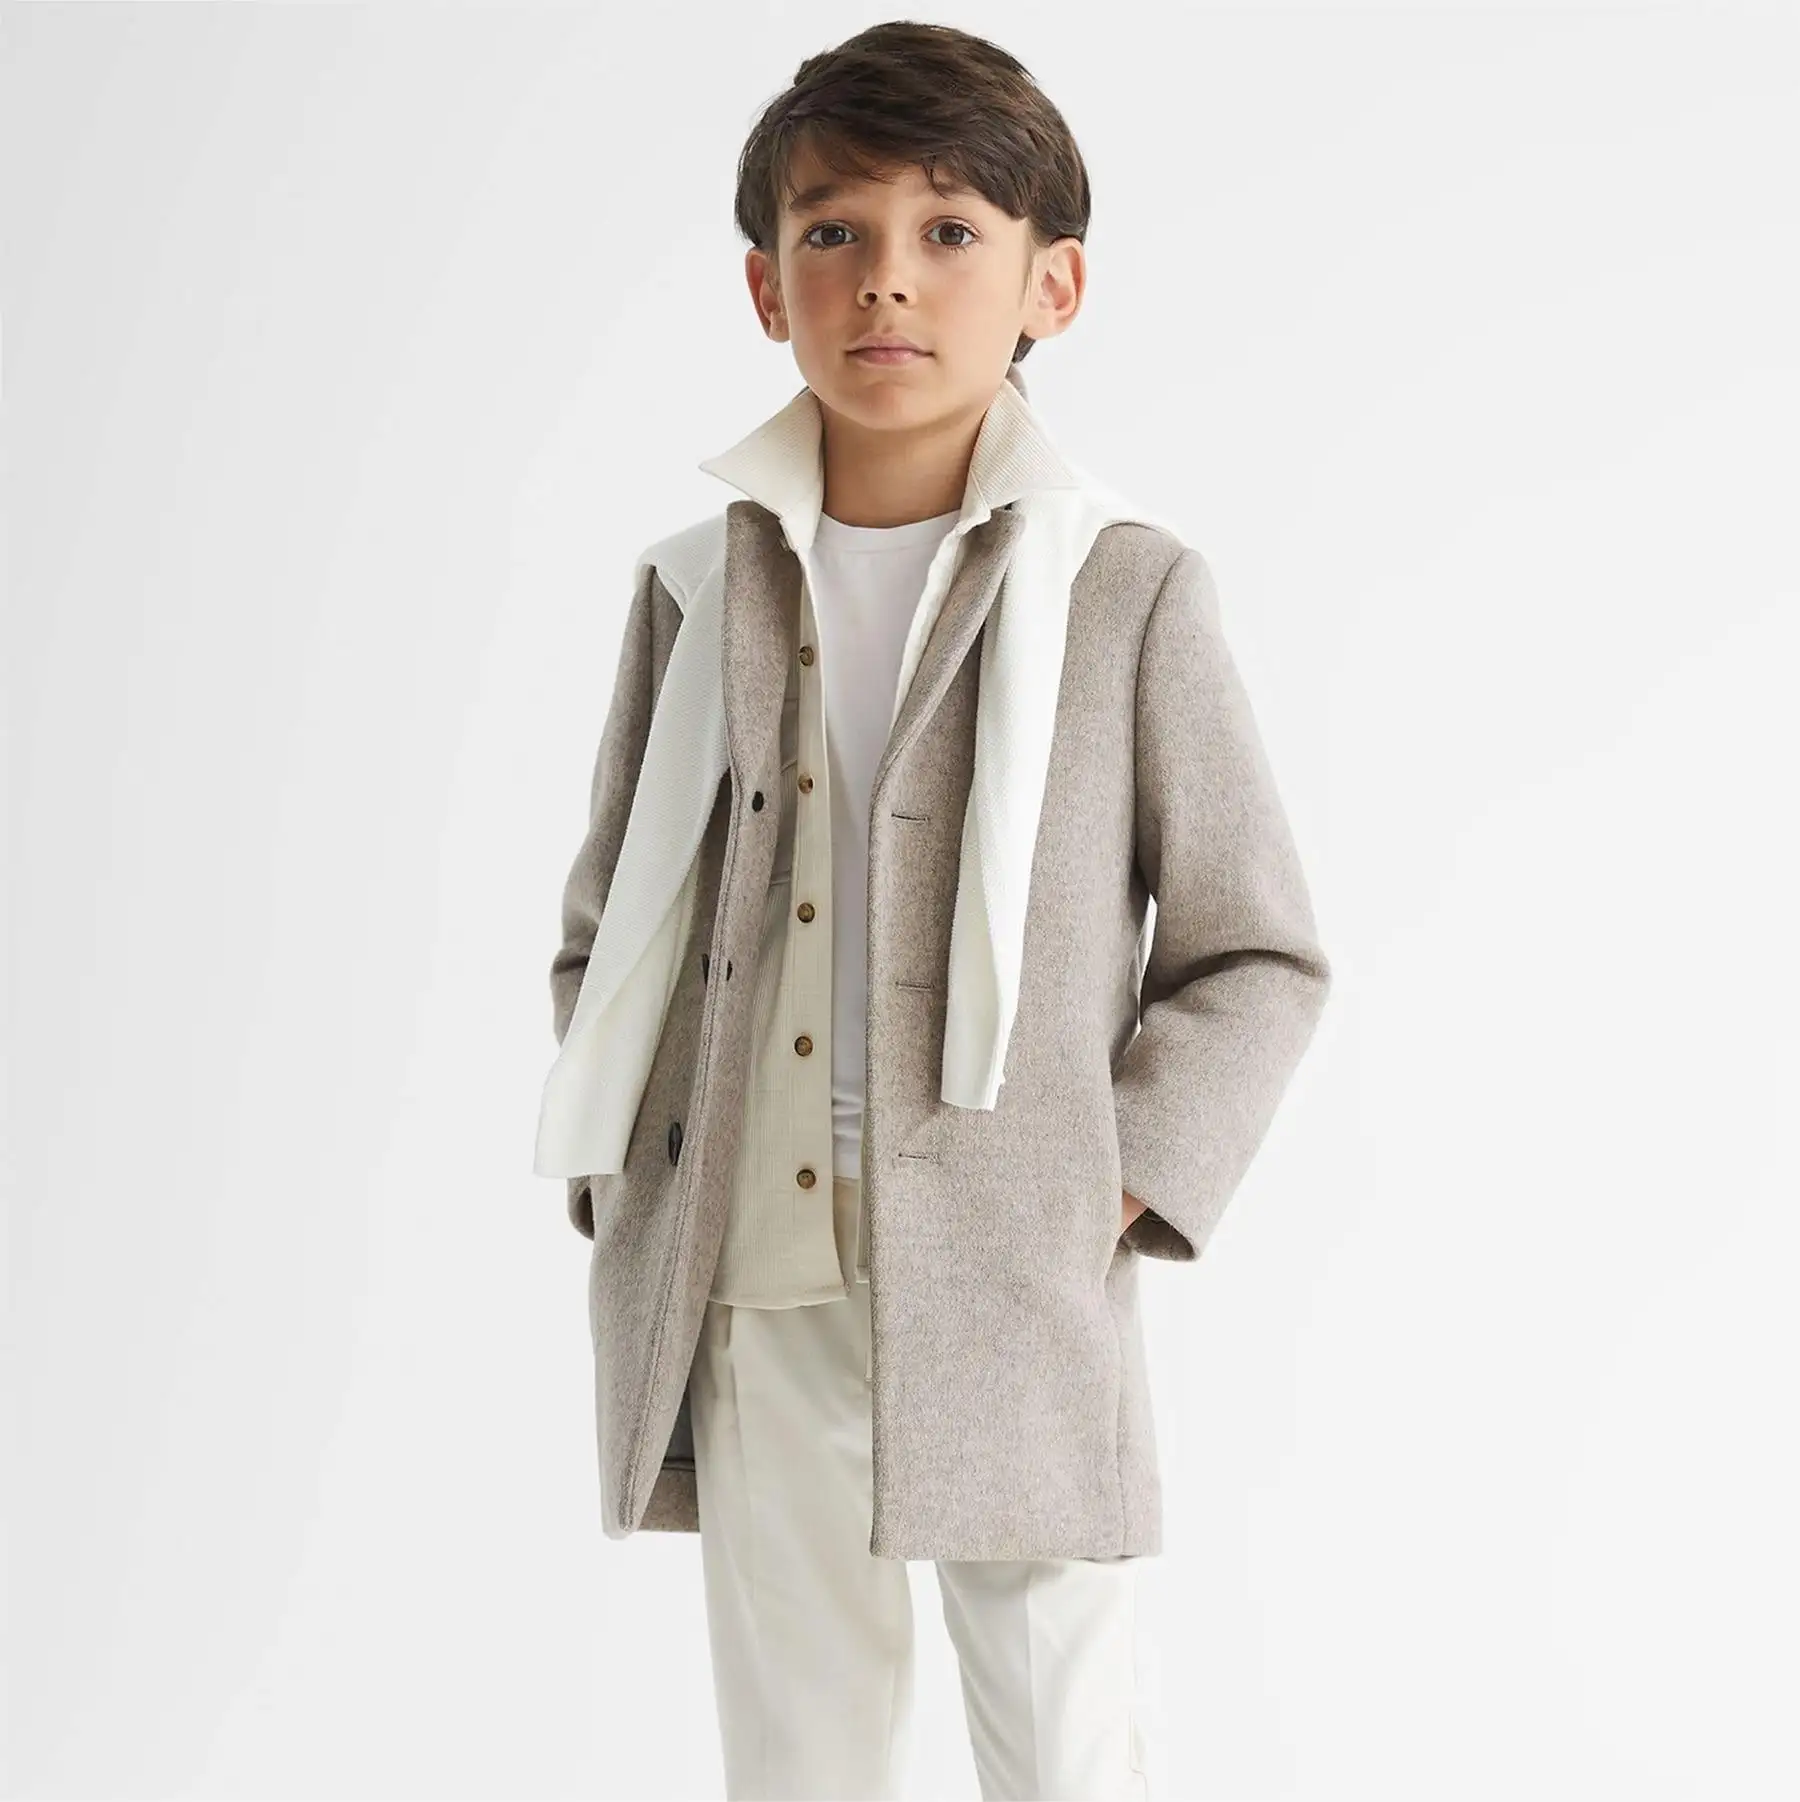 Casaco reiss gable infantil, jaqueta estilo overcasaco para meninos